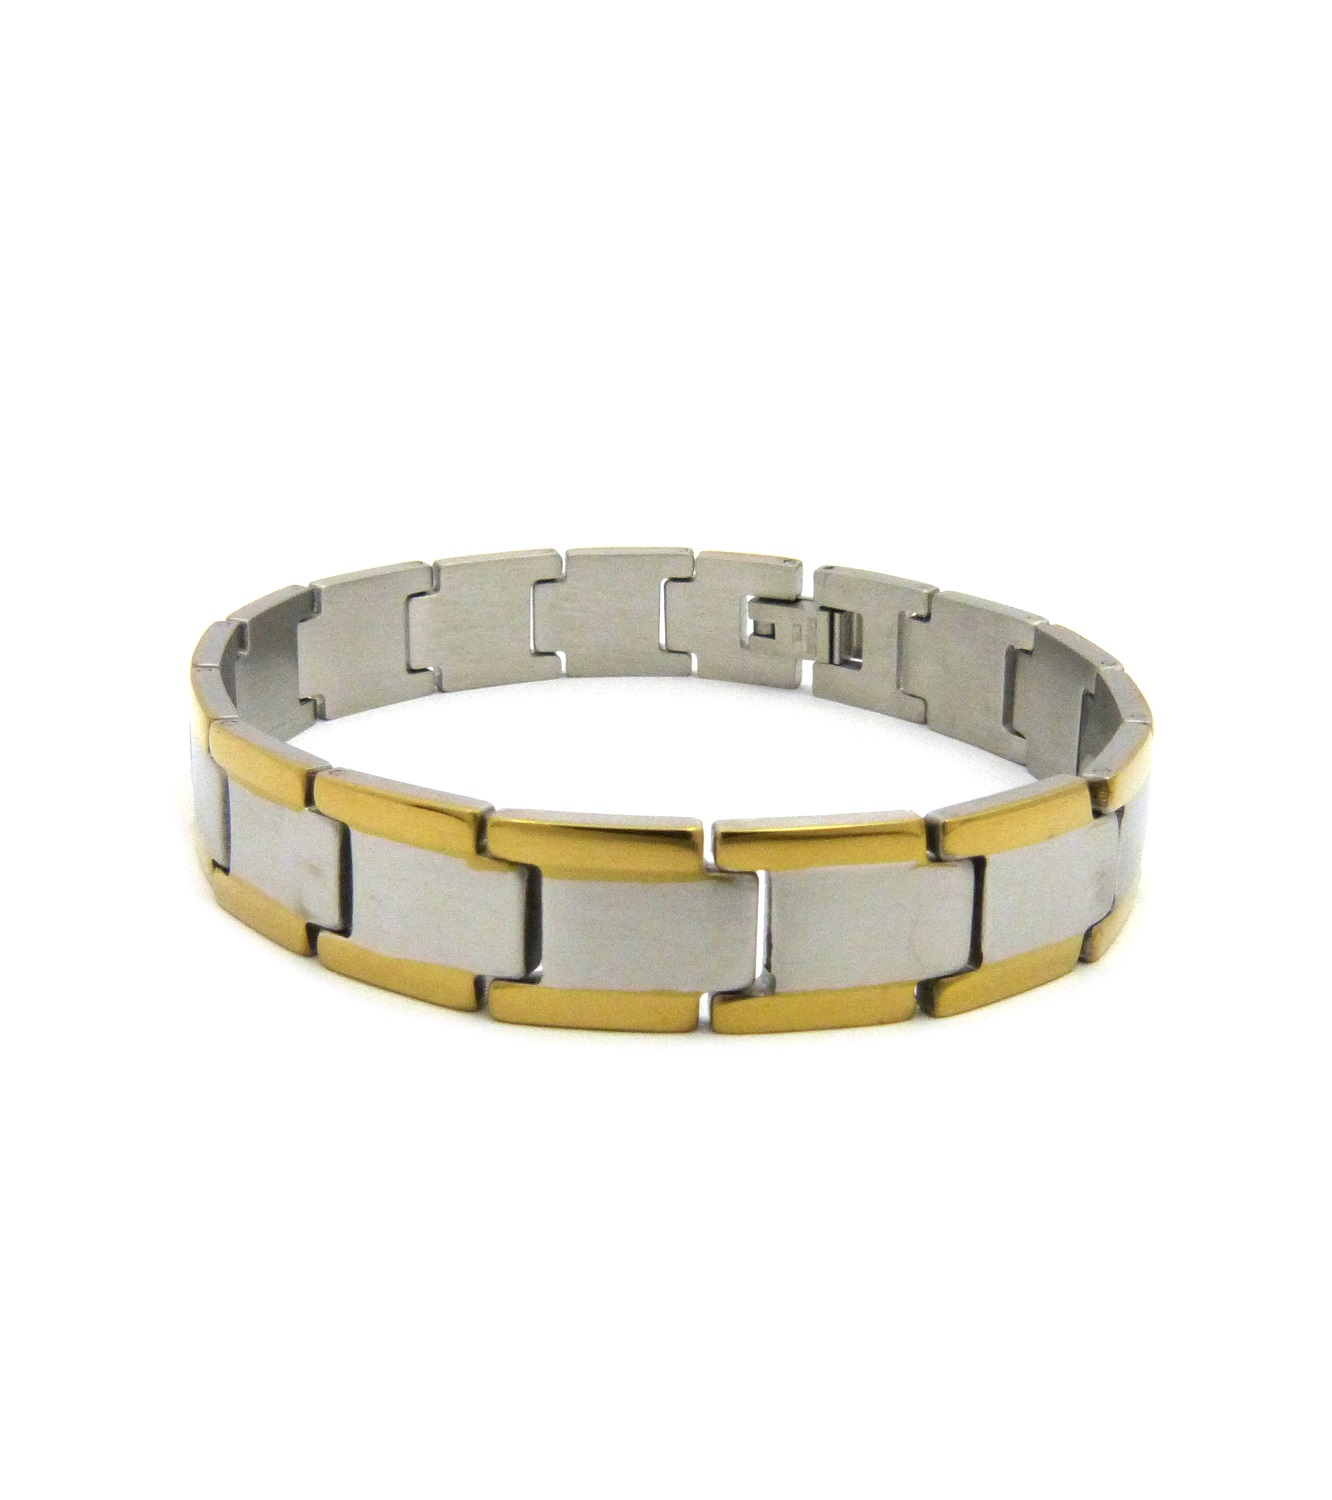 Golden Edge High Fashion Stainless Steel Bling Bracelet